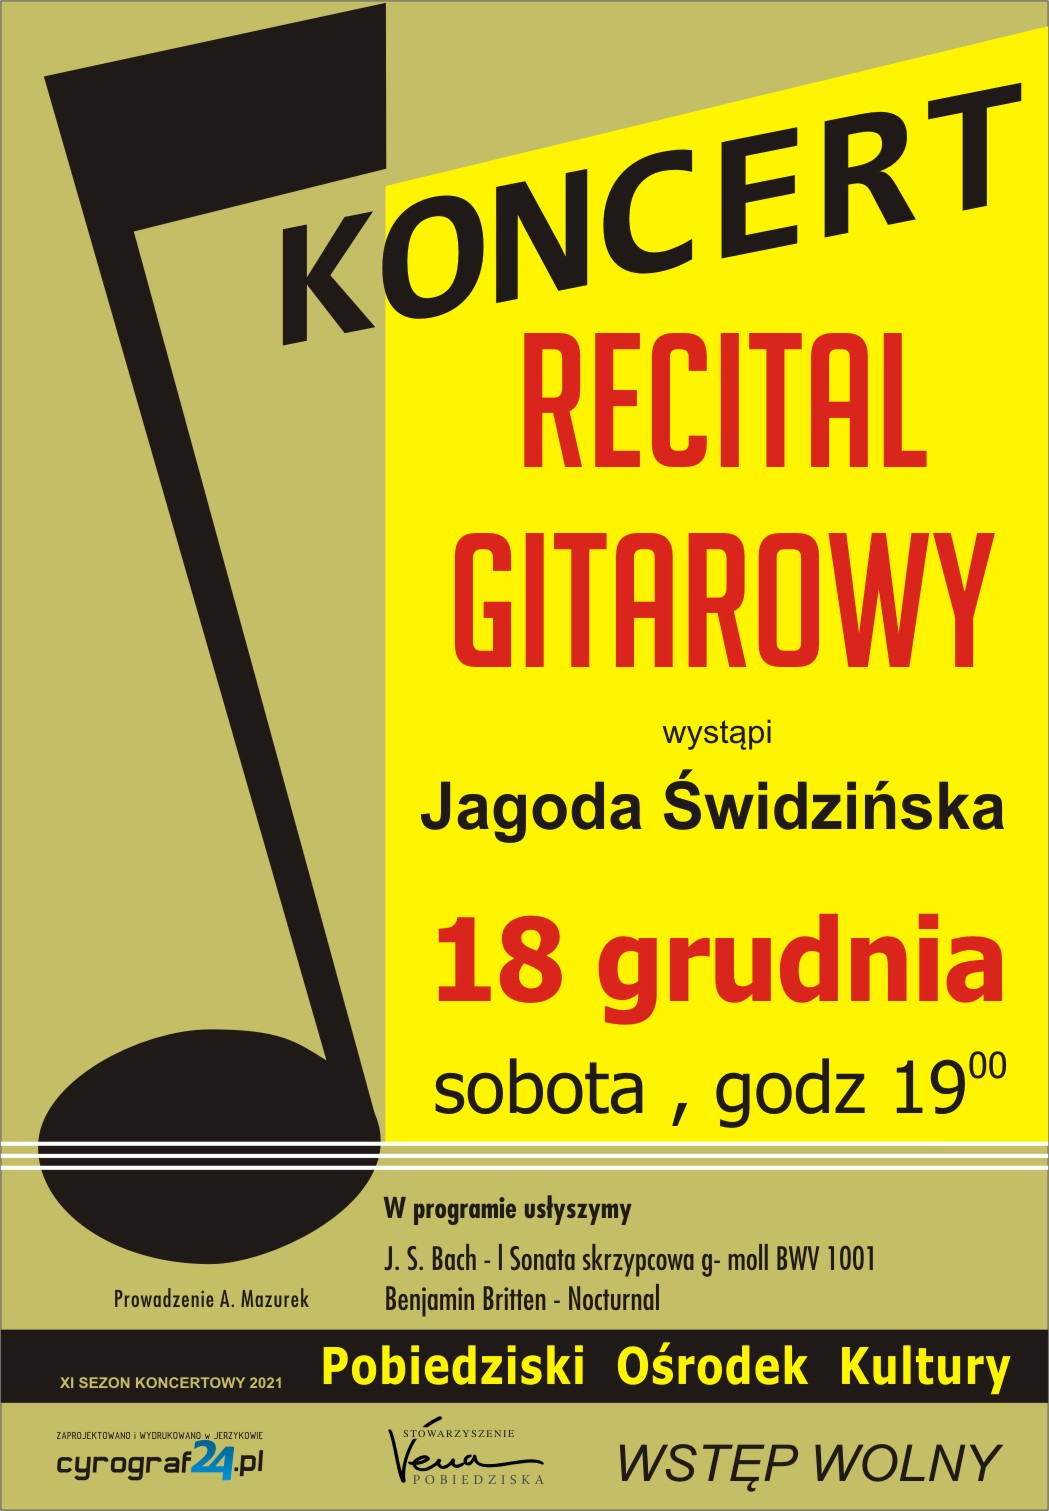 Koncert w Jerzykowie